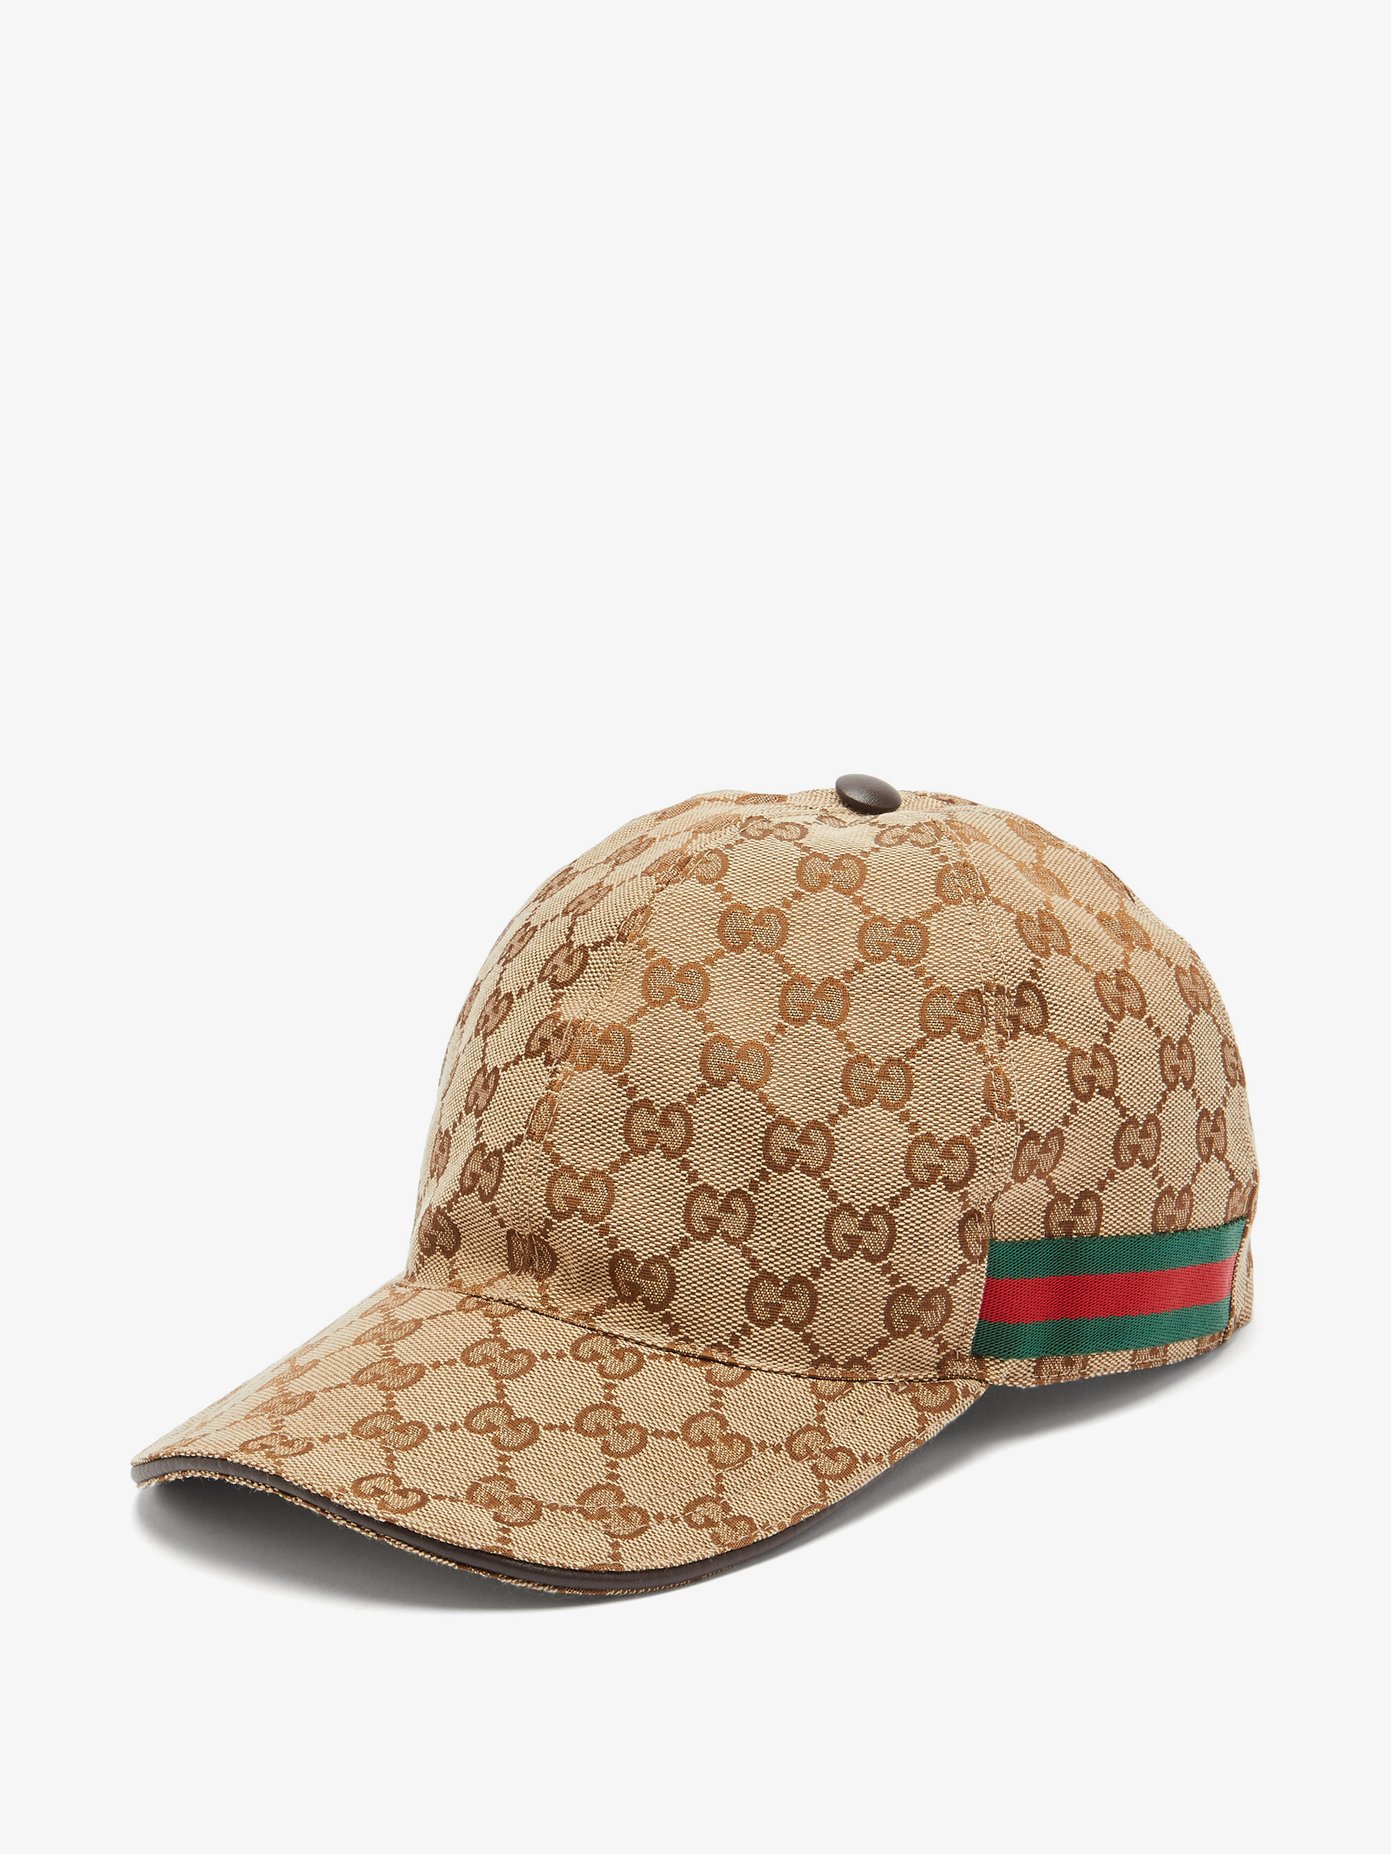 Gucci Baseball Cap Size Chart